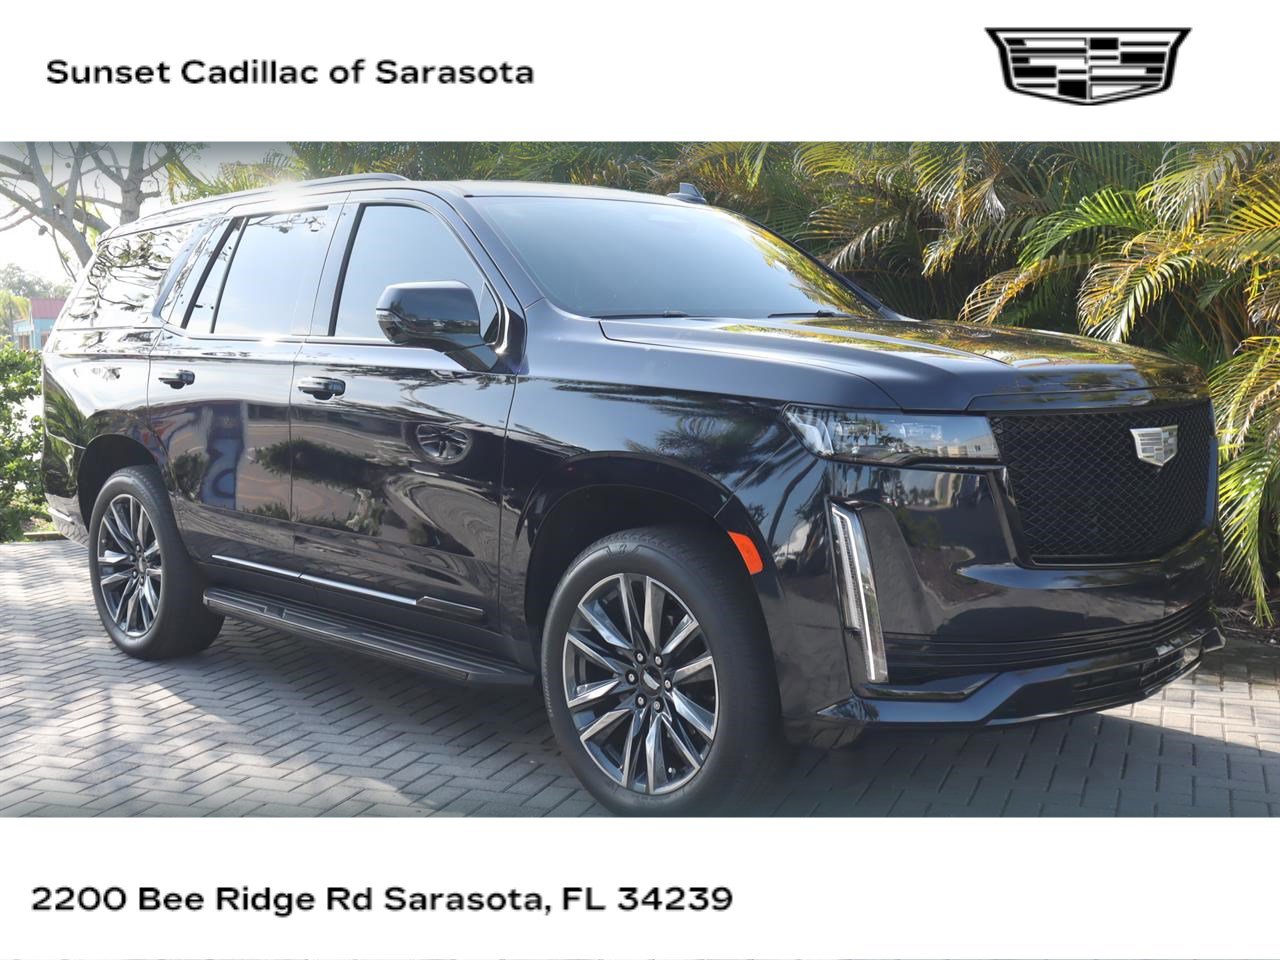 Used Cadillac Escalade Sarasota Fl